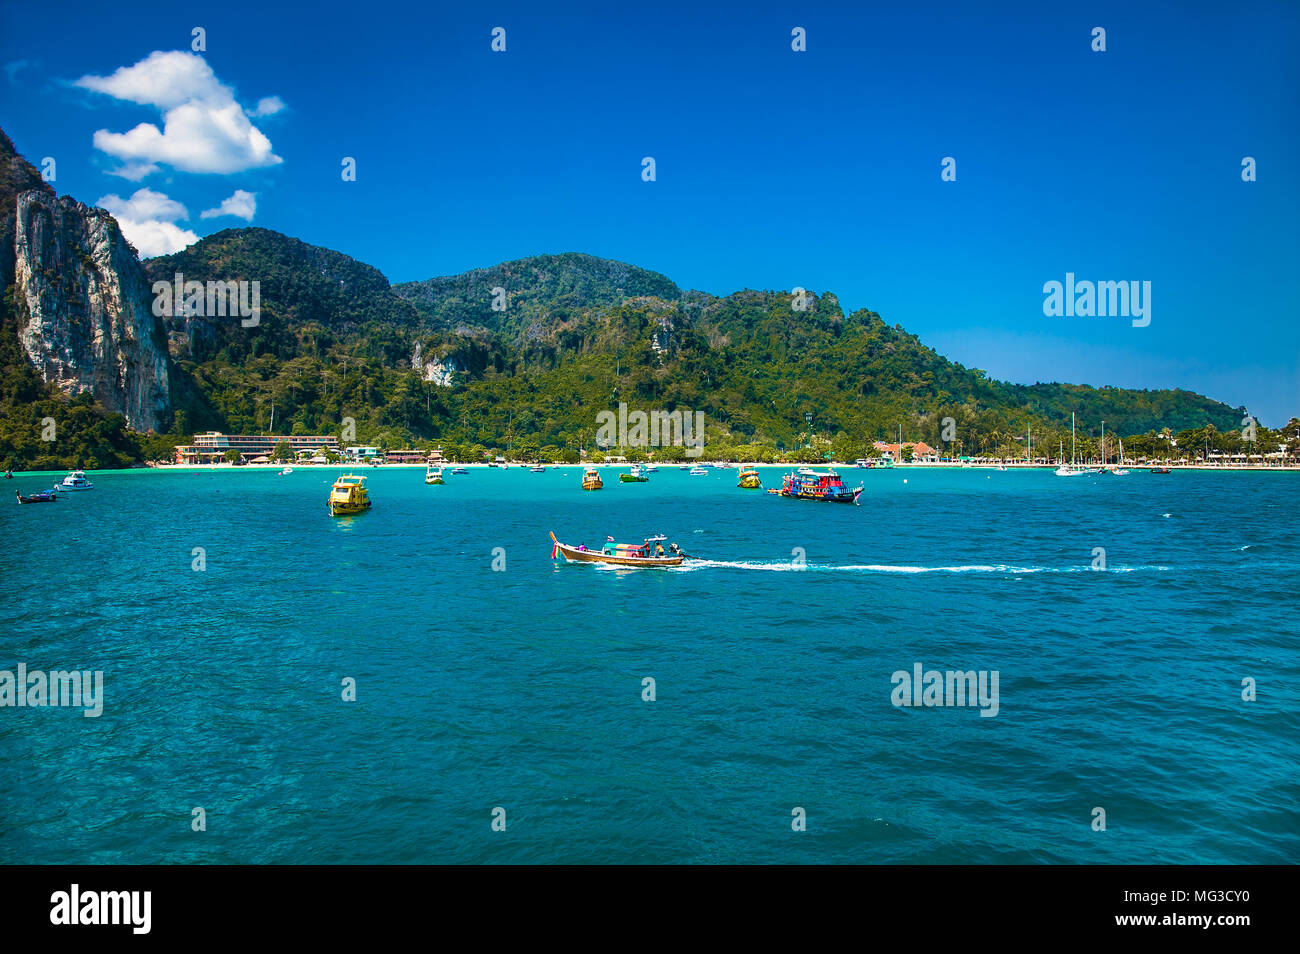 Boats at Ton Sai bay in Ko Phi Phi island, Thailand. Stock Photo